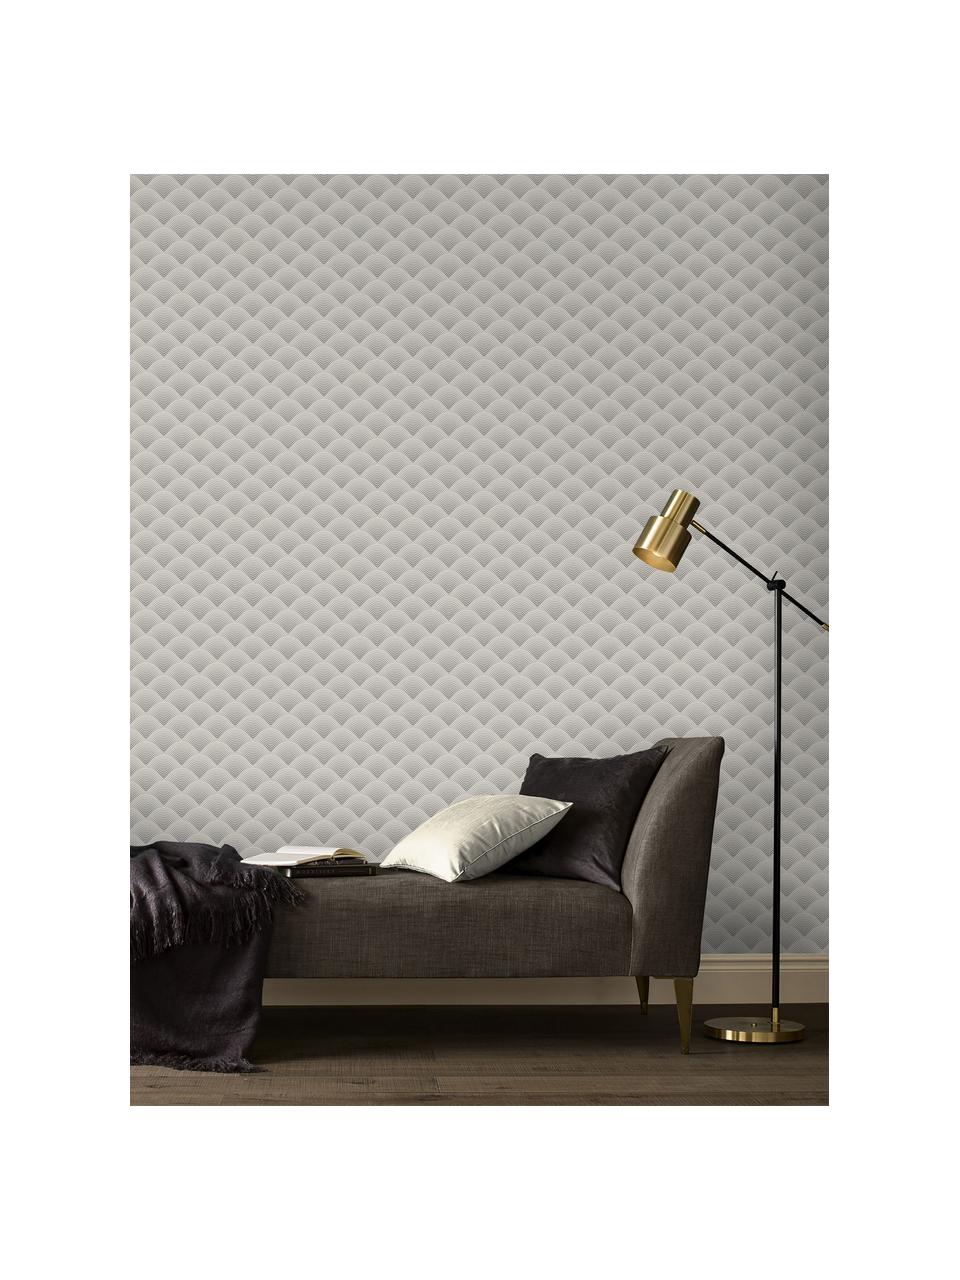 Tapete Luxus 3D Geometric Art, Vlies, Silberfarben, Grau, 52 x 1005 cm